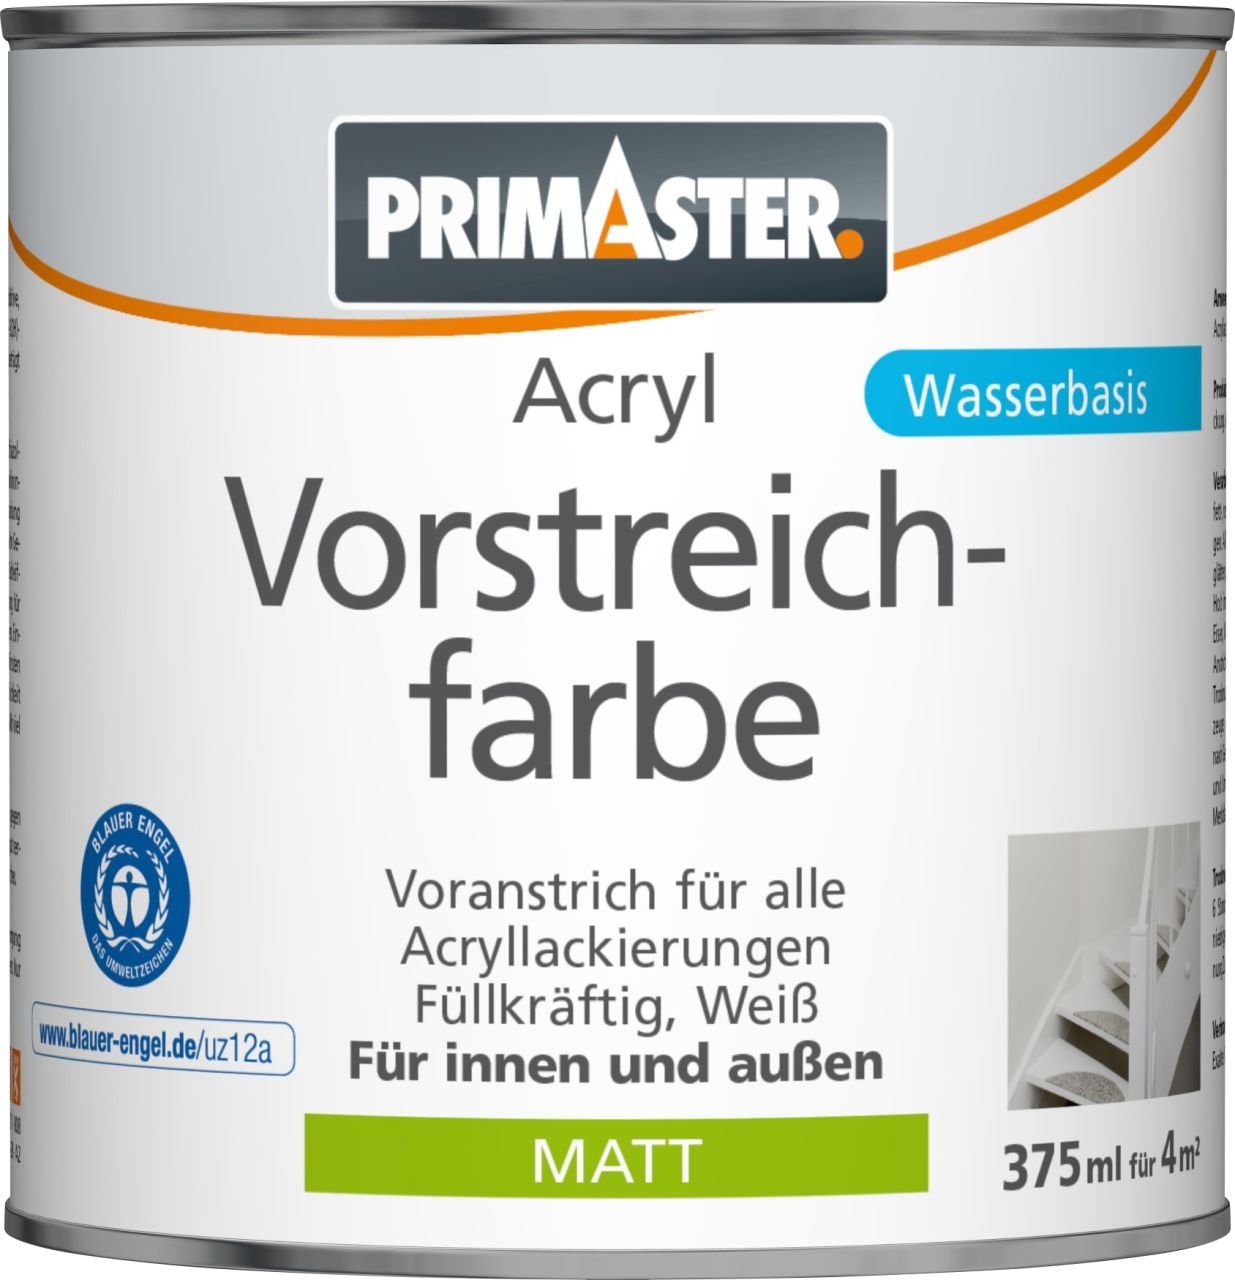 Vorstreichfarbe ml Primaster Primaster Acryl matt 375 weiß Grundierfarbe